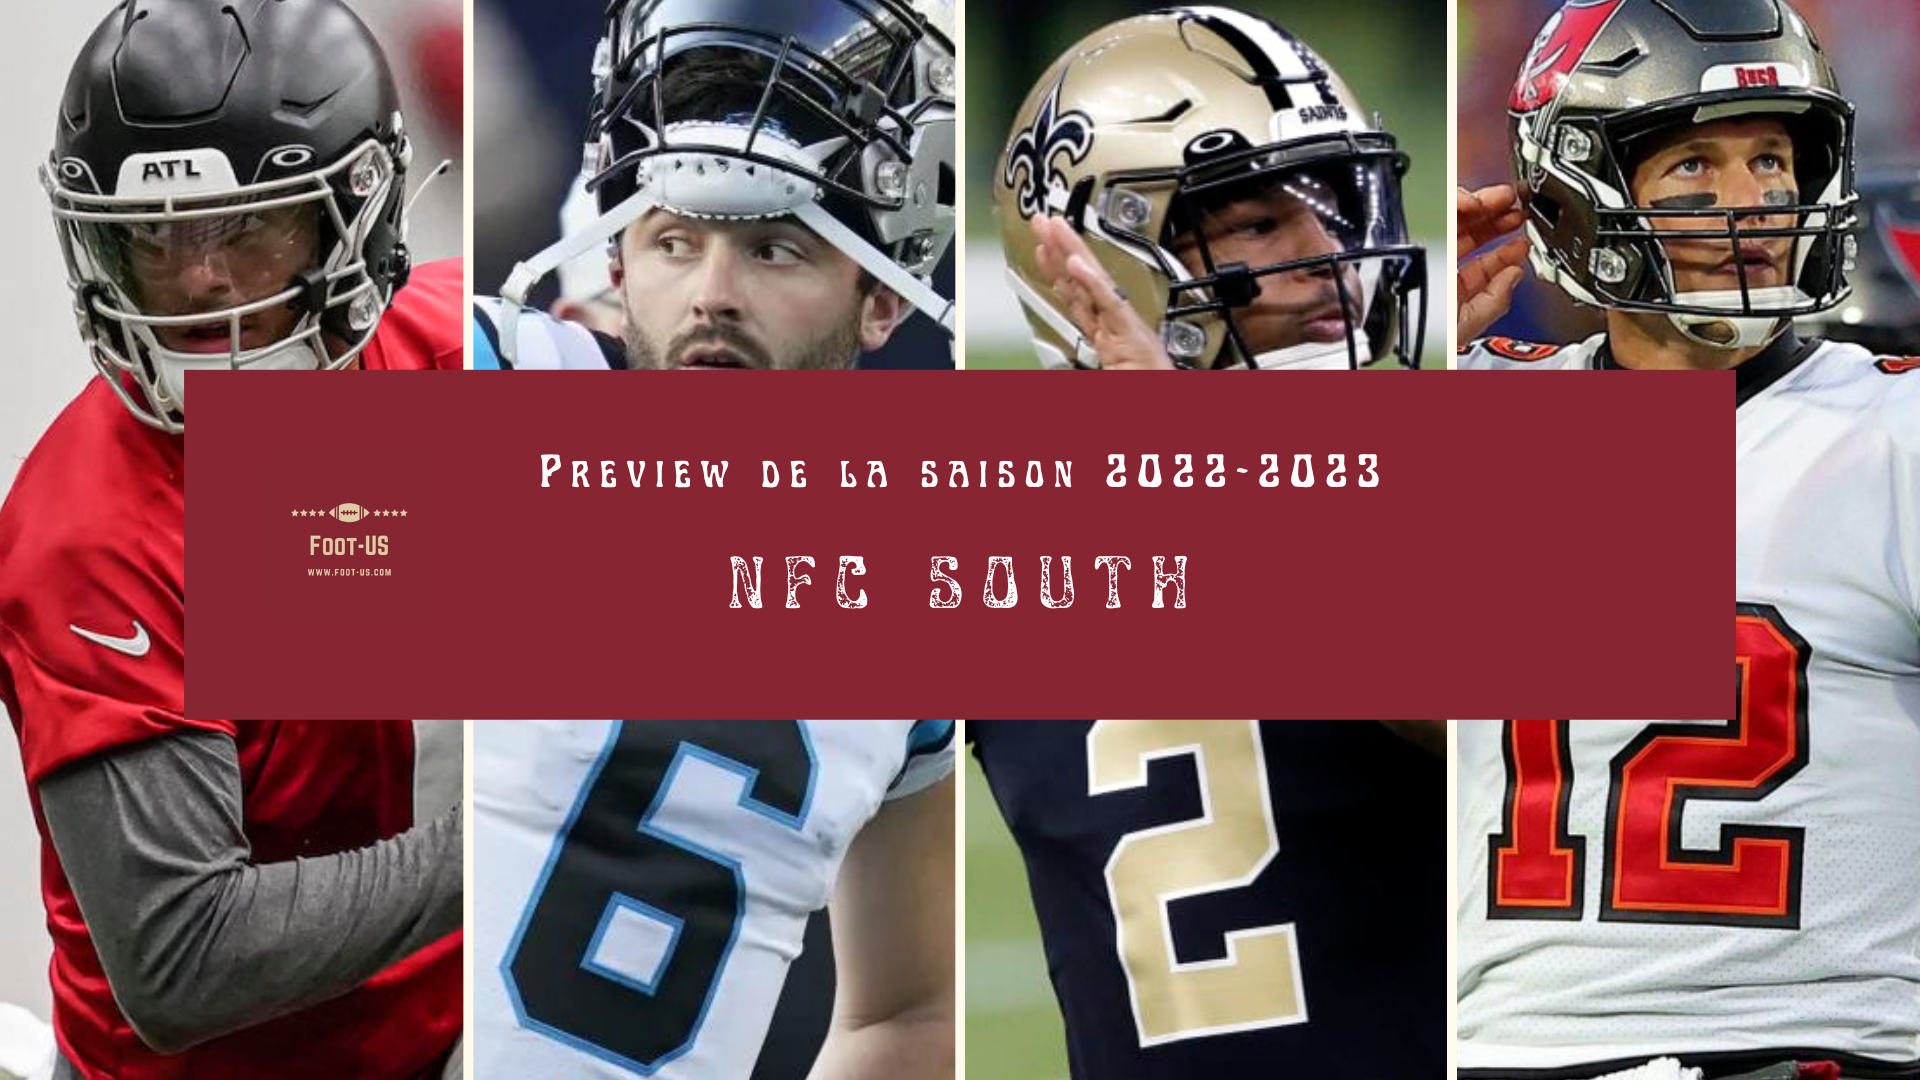 Preview de la saison 2022-2023 de NFL – NFC South